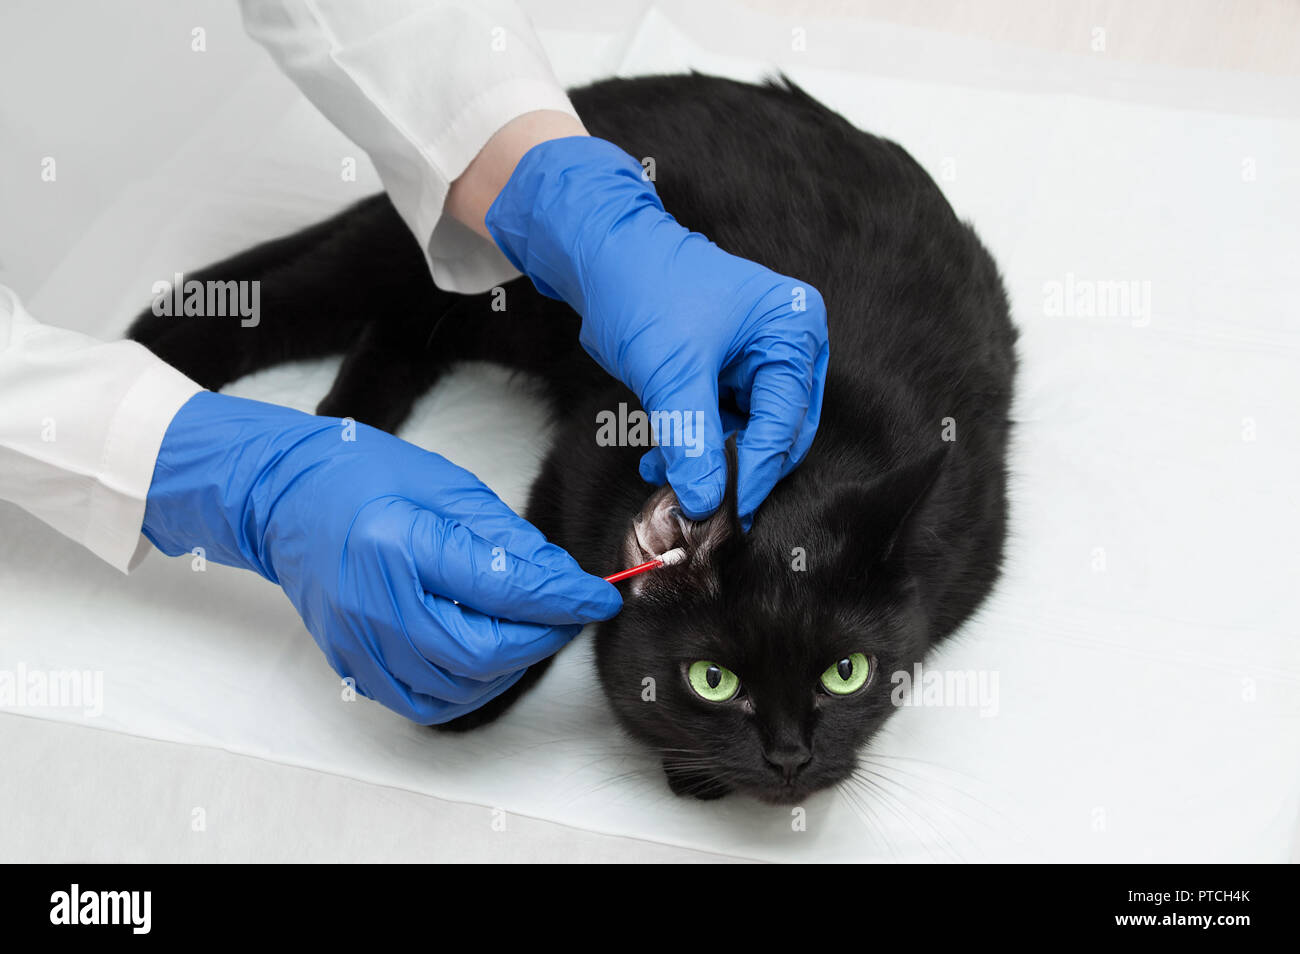 Ein Tierarzt, der im weißen Kittel und Handschuhe ist die Reinigung der  Ohren einer schwarzen Katze. Close-up Stockfotografie - Alamy